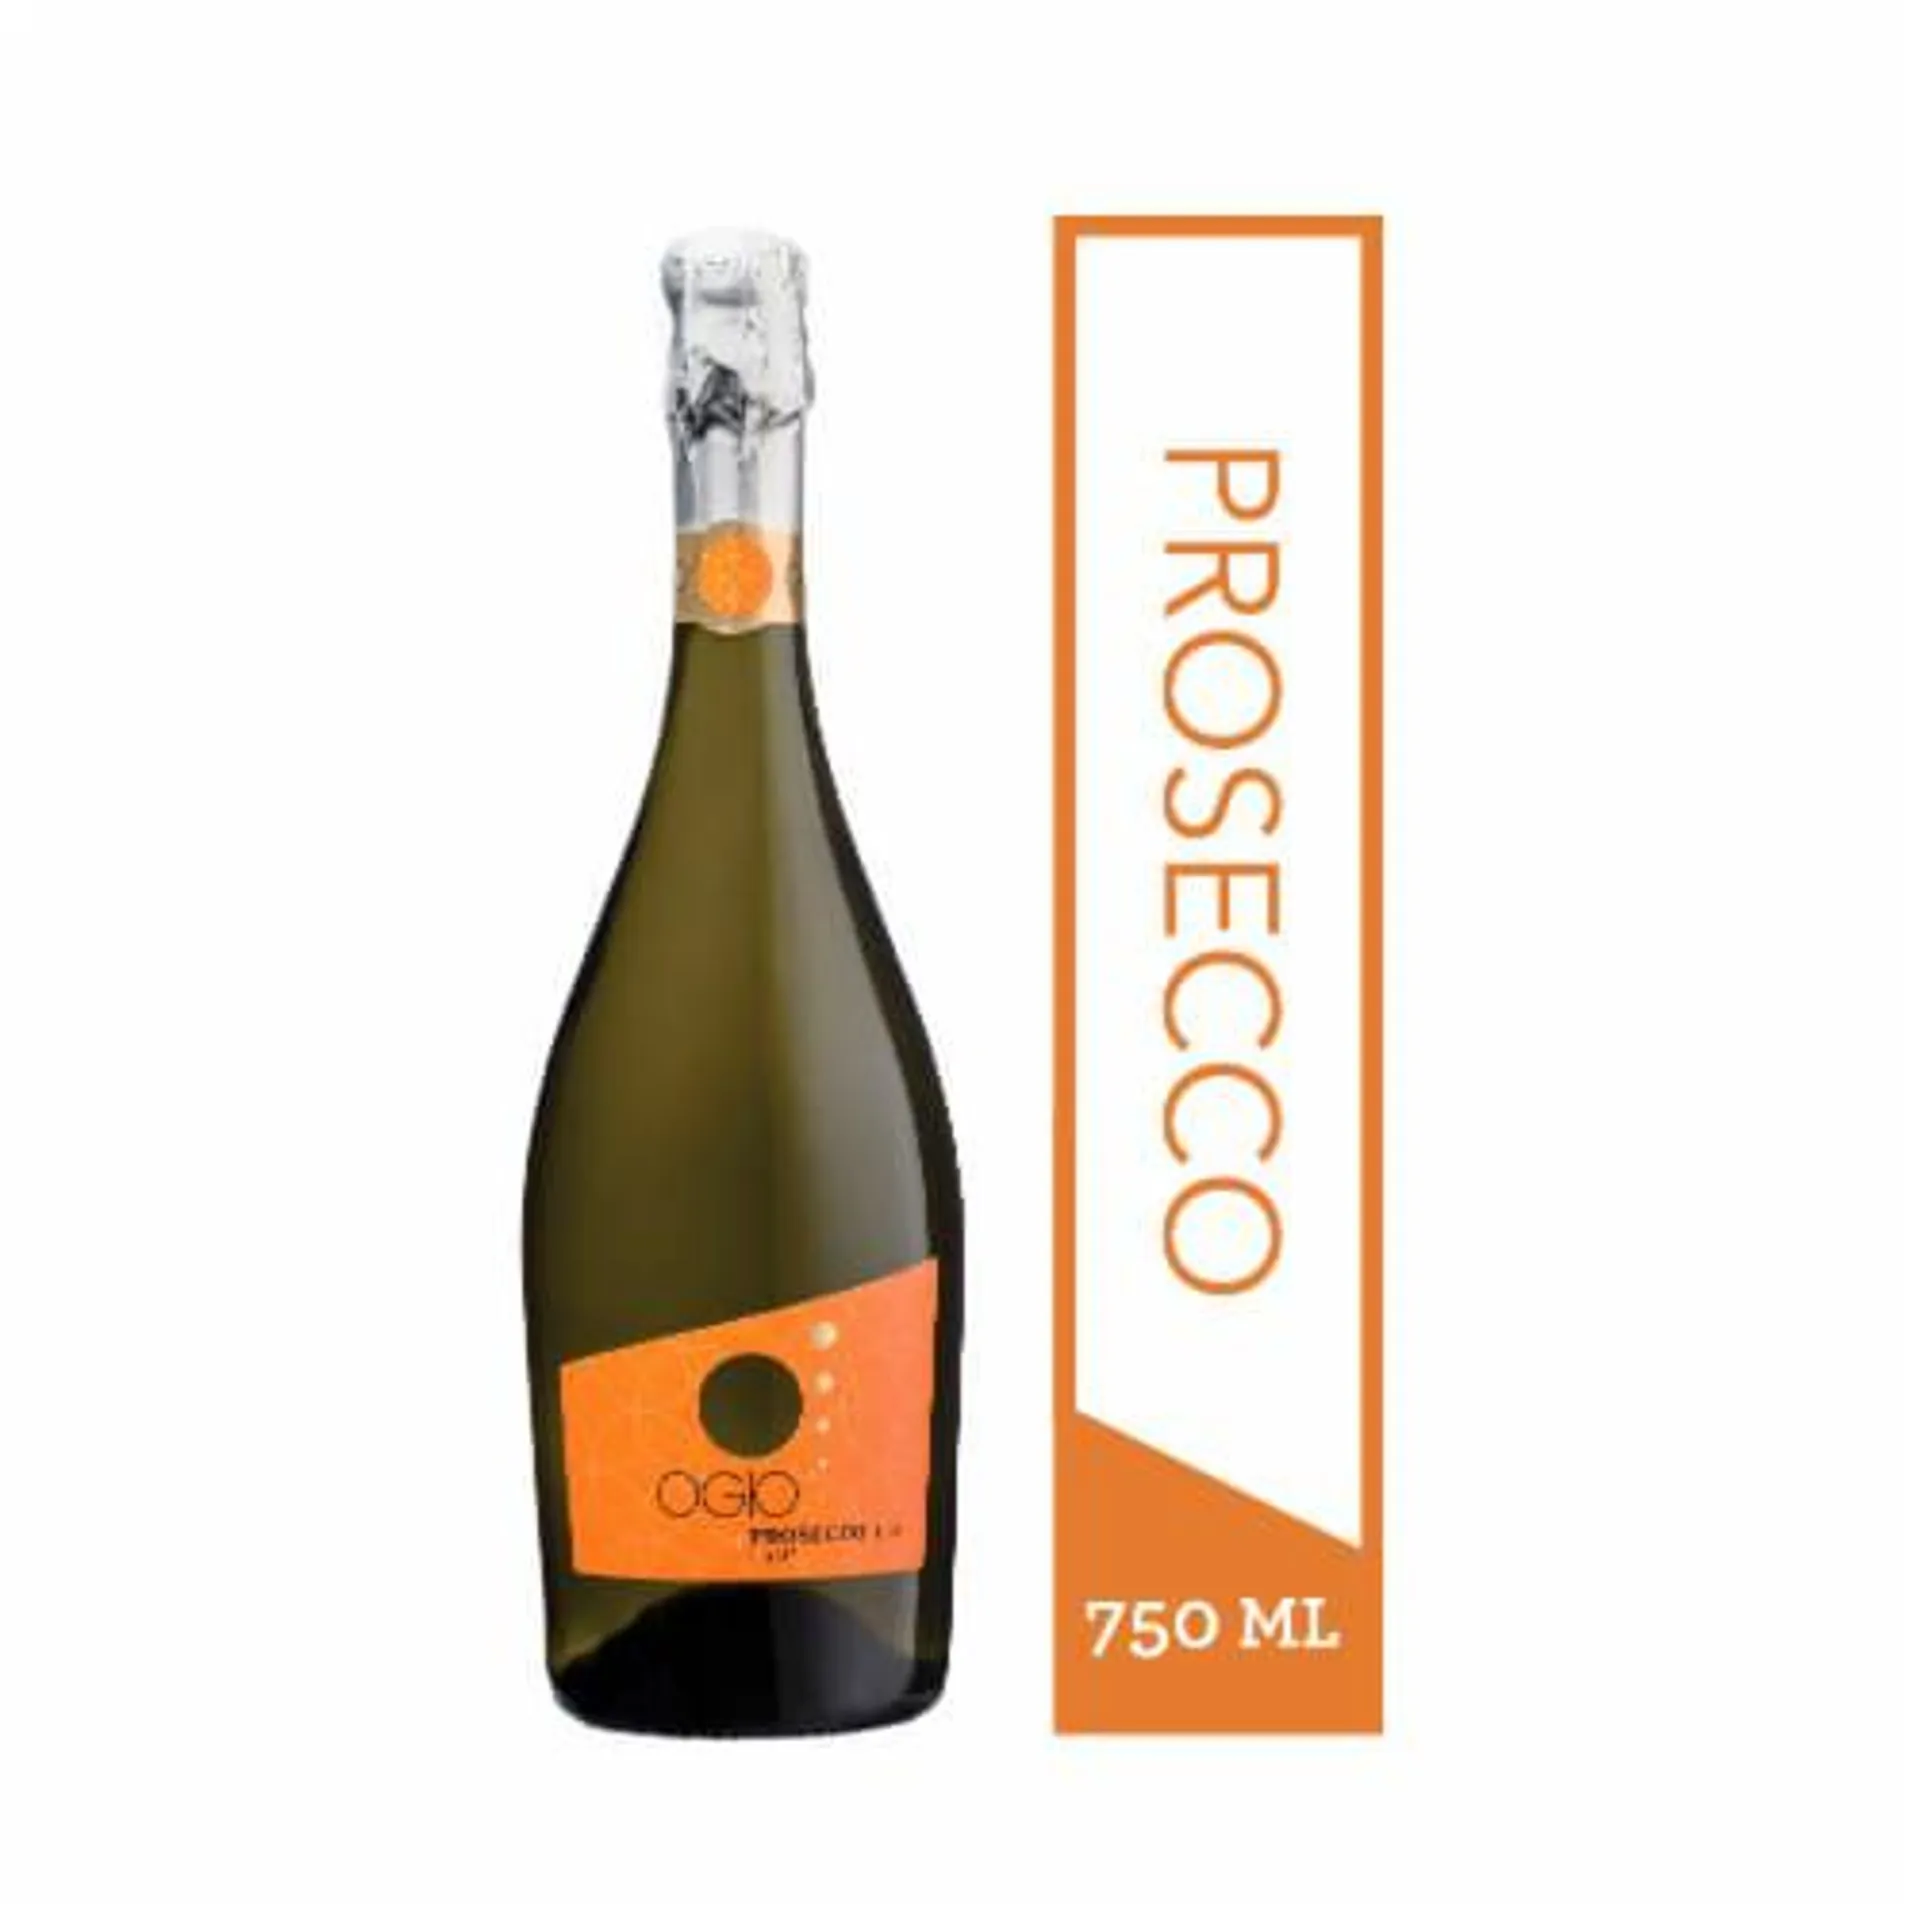 Ogio Prosecco Sparkling White Wine